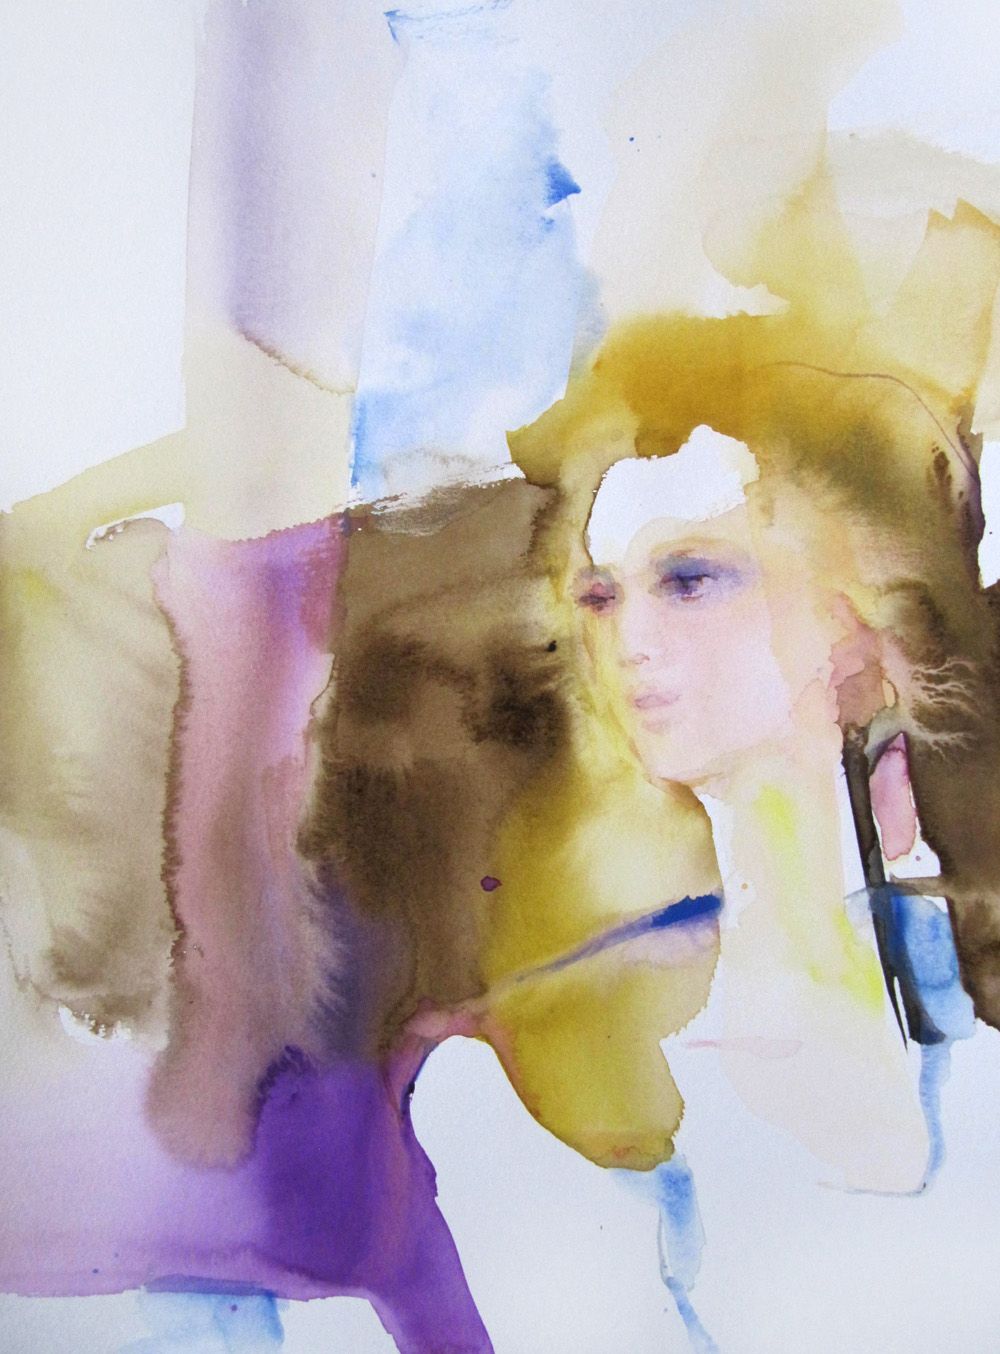 Brise matinale" de Sylvia Baldeva, peinture colorée d'une femme inspirée, légèreté, état d'être, expressionnisme, aquarelle sur papier Canson®.